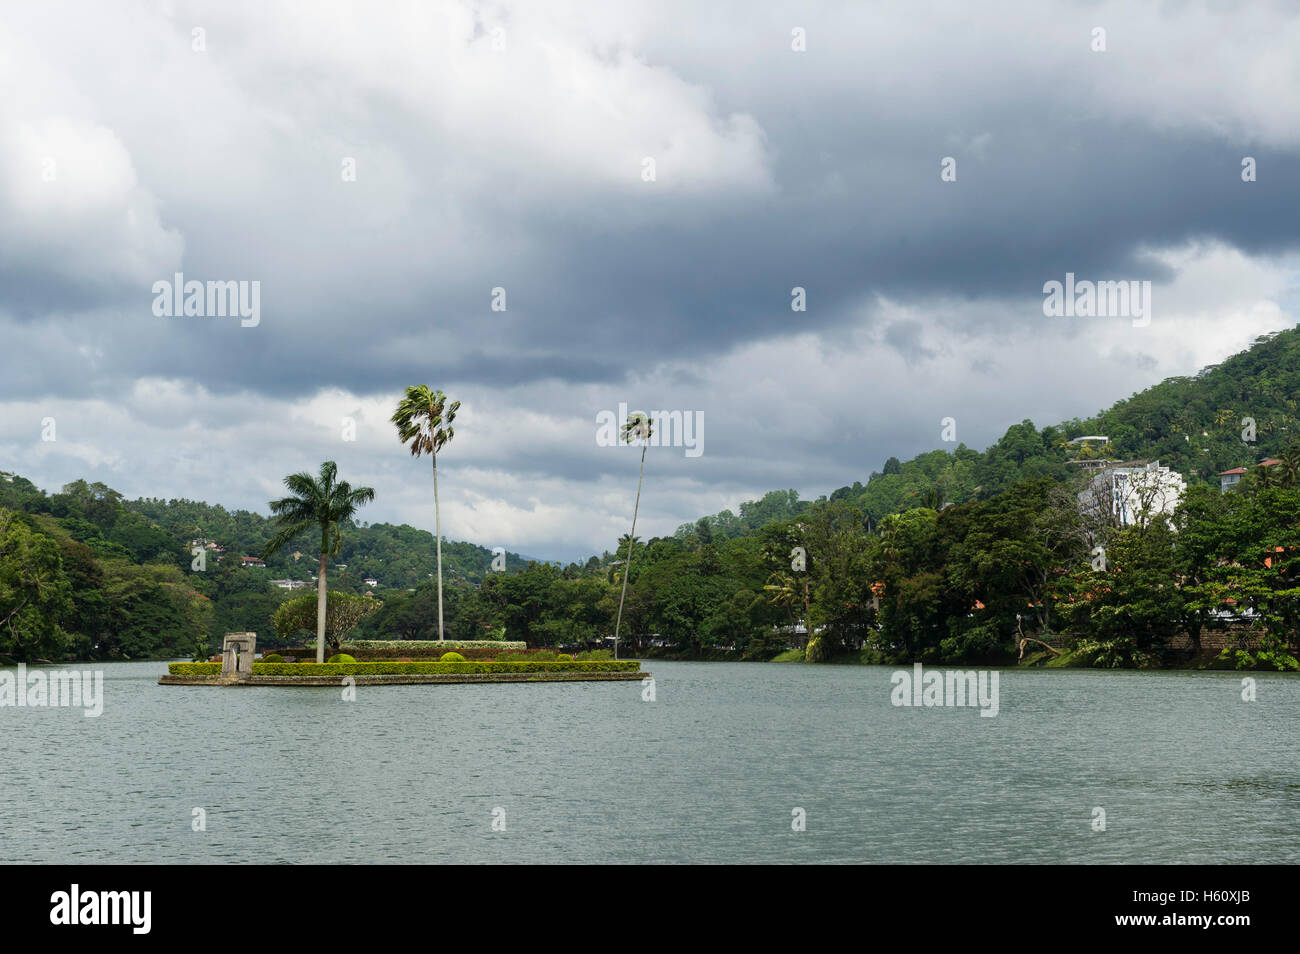 Le logement de l'île Royale la maison d'été sur le lac de Kandy, Sri Lanka Banque D'Images